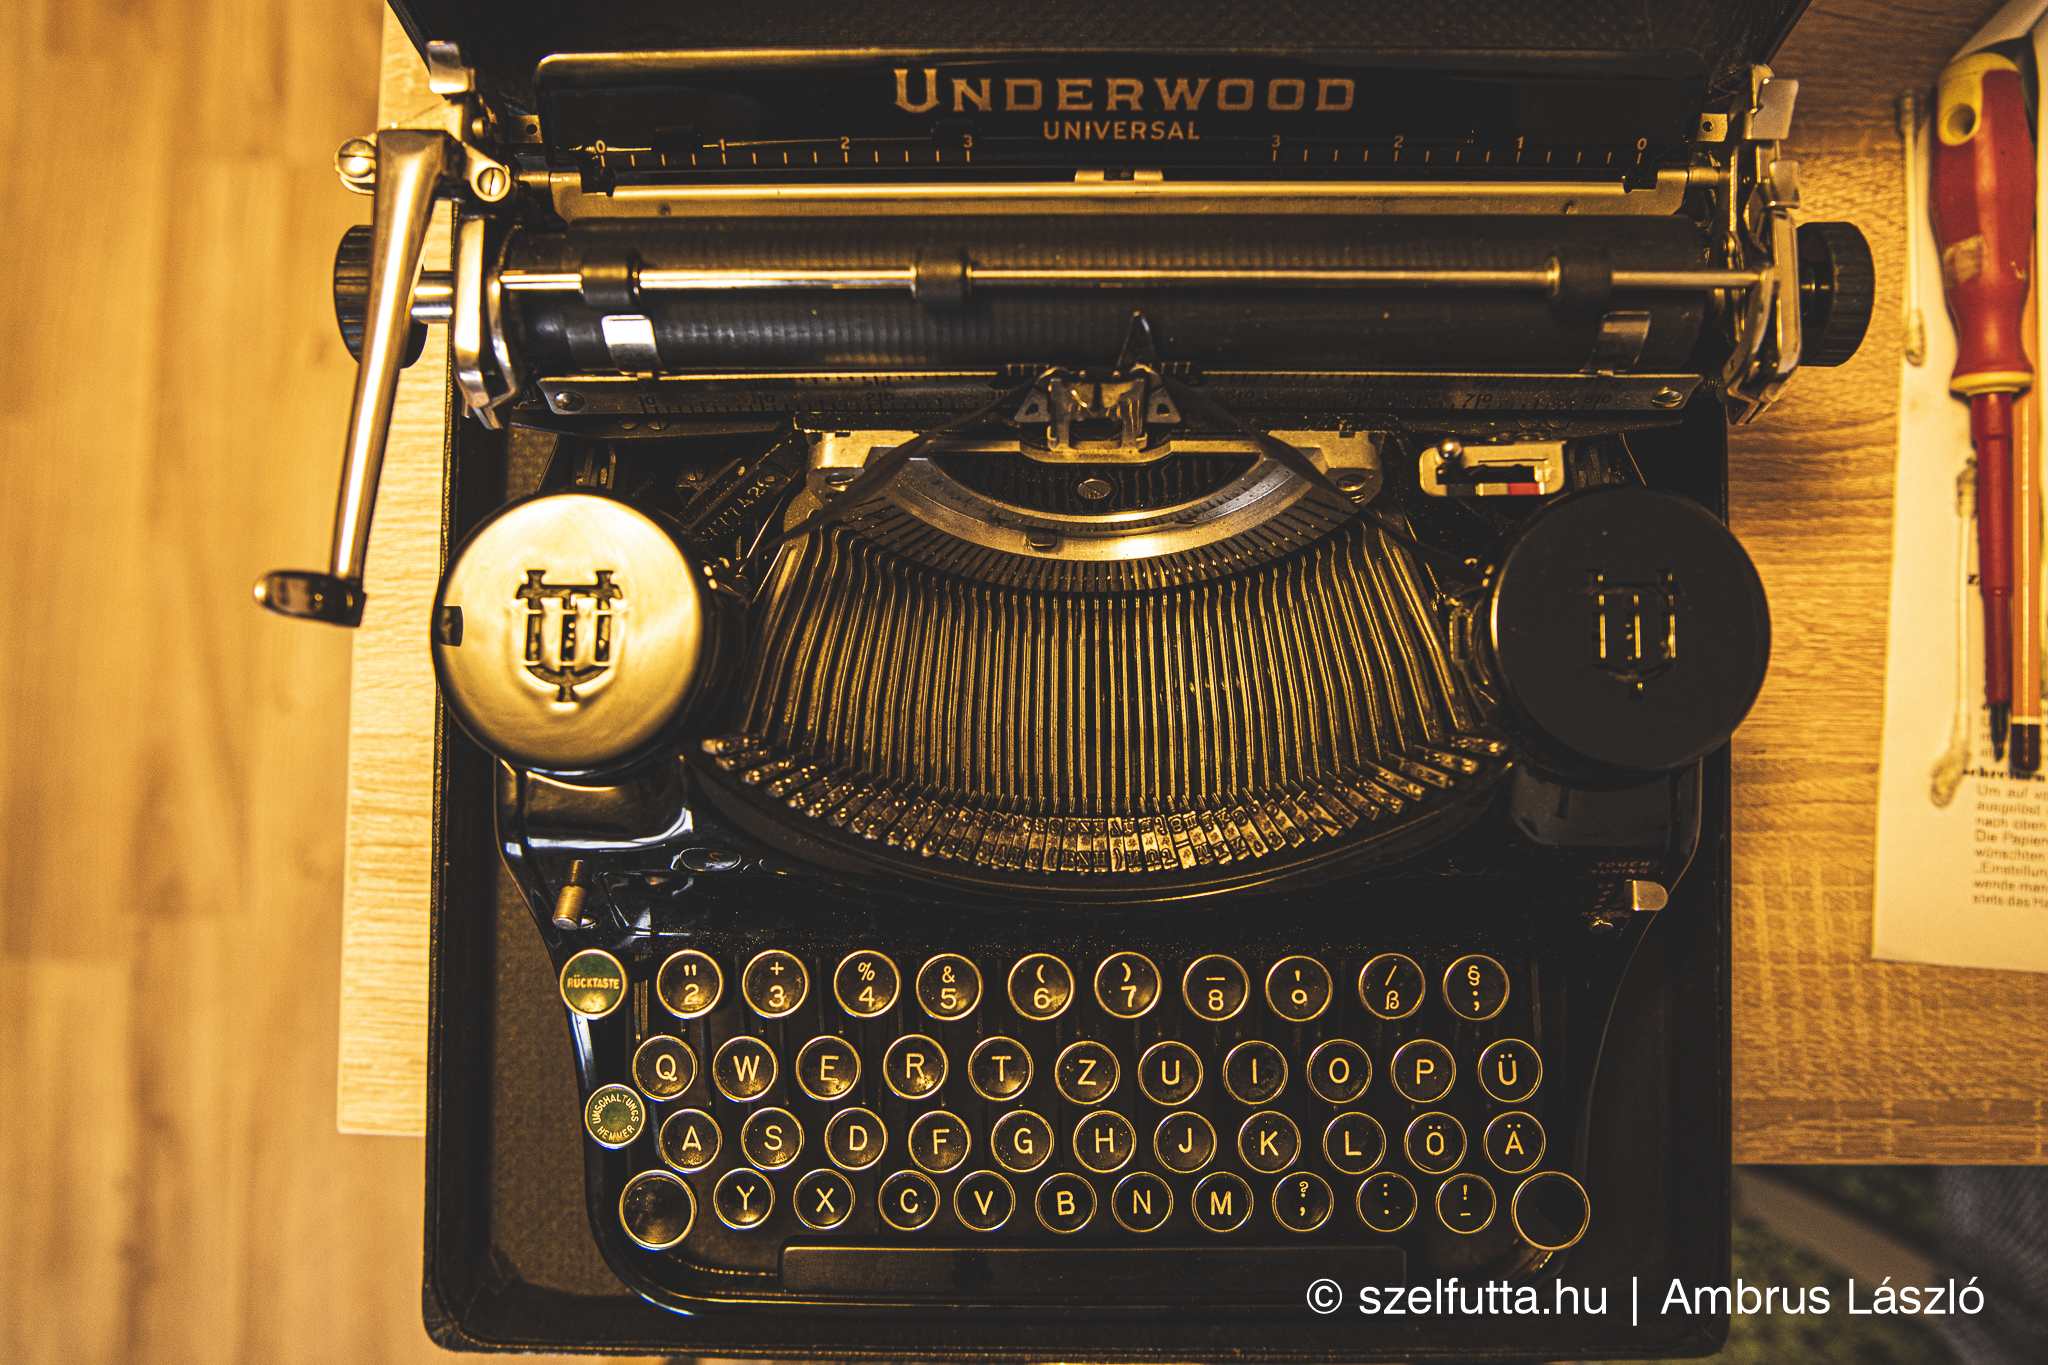 Underwood universal typewriter